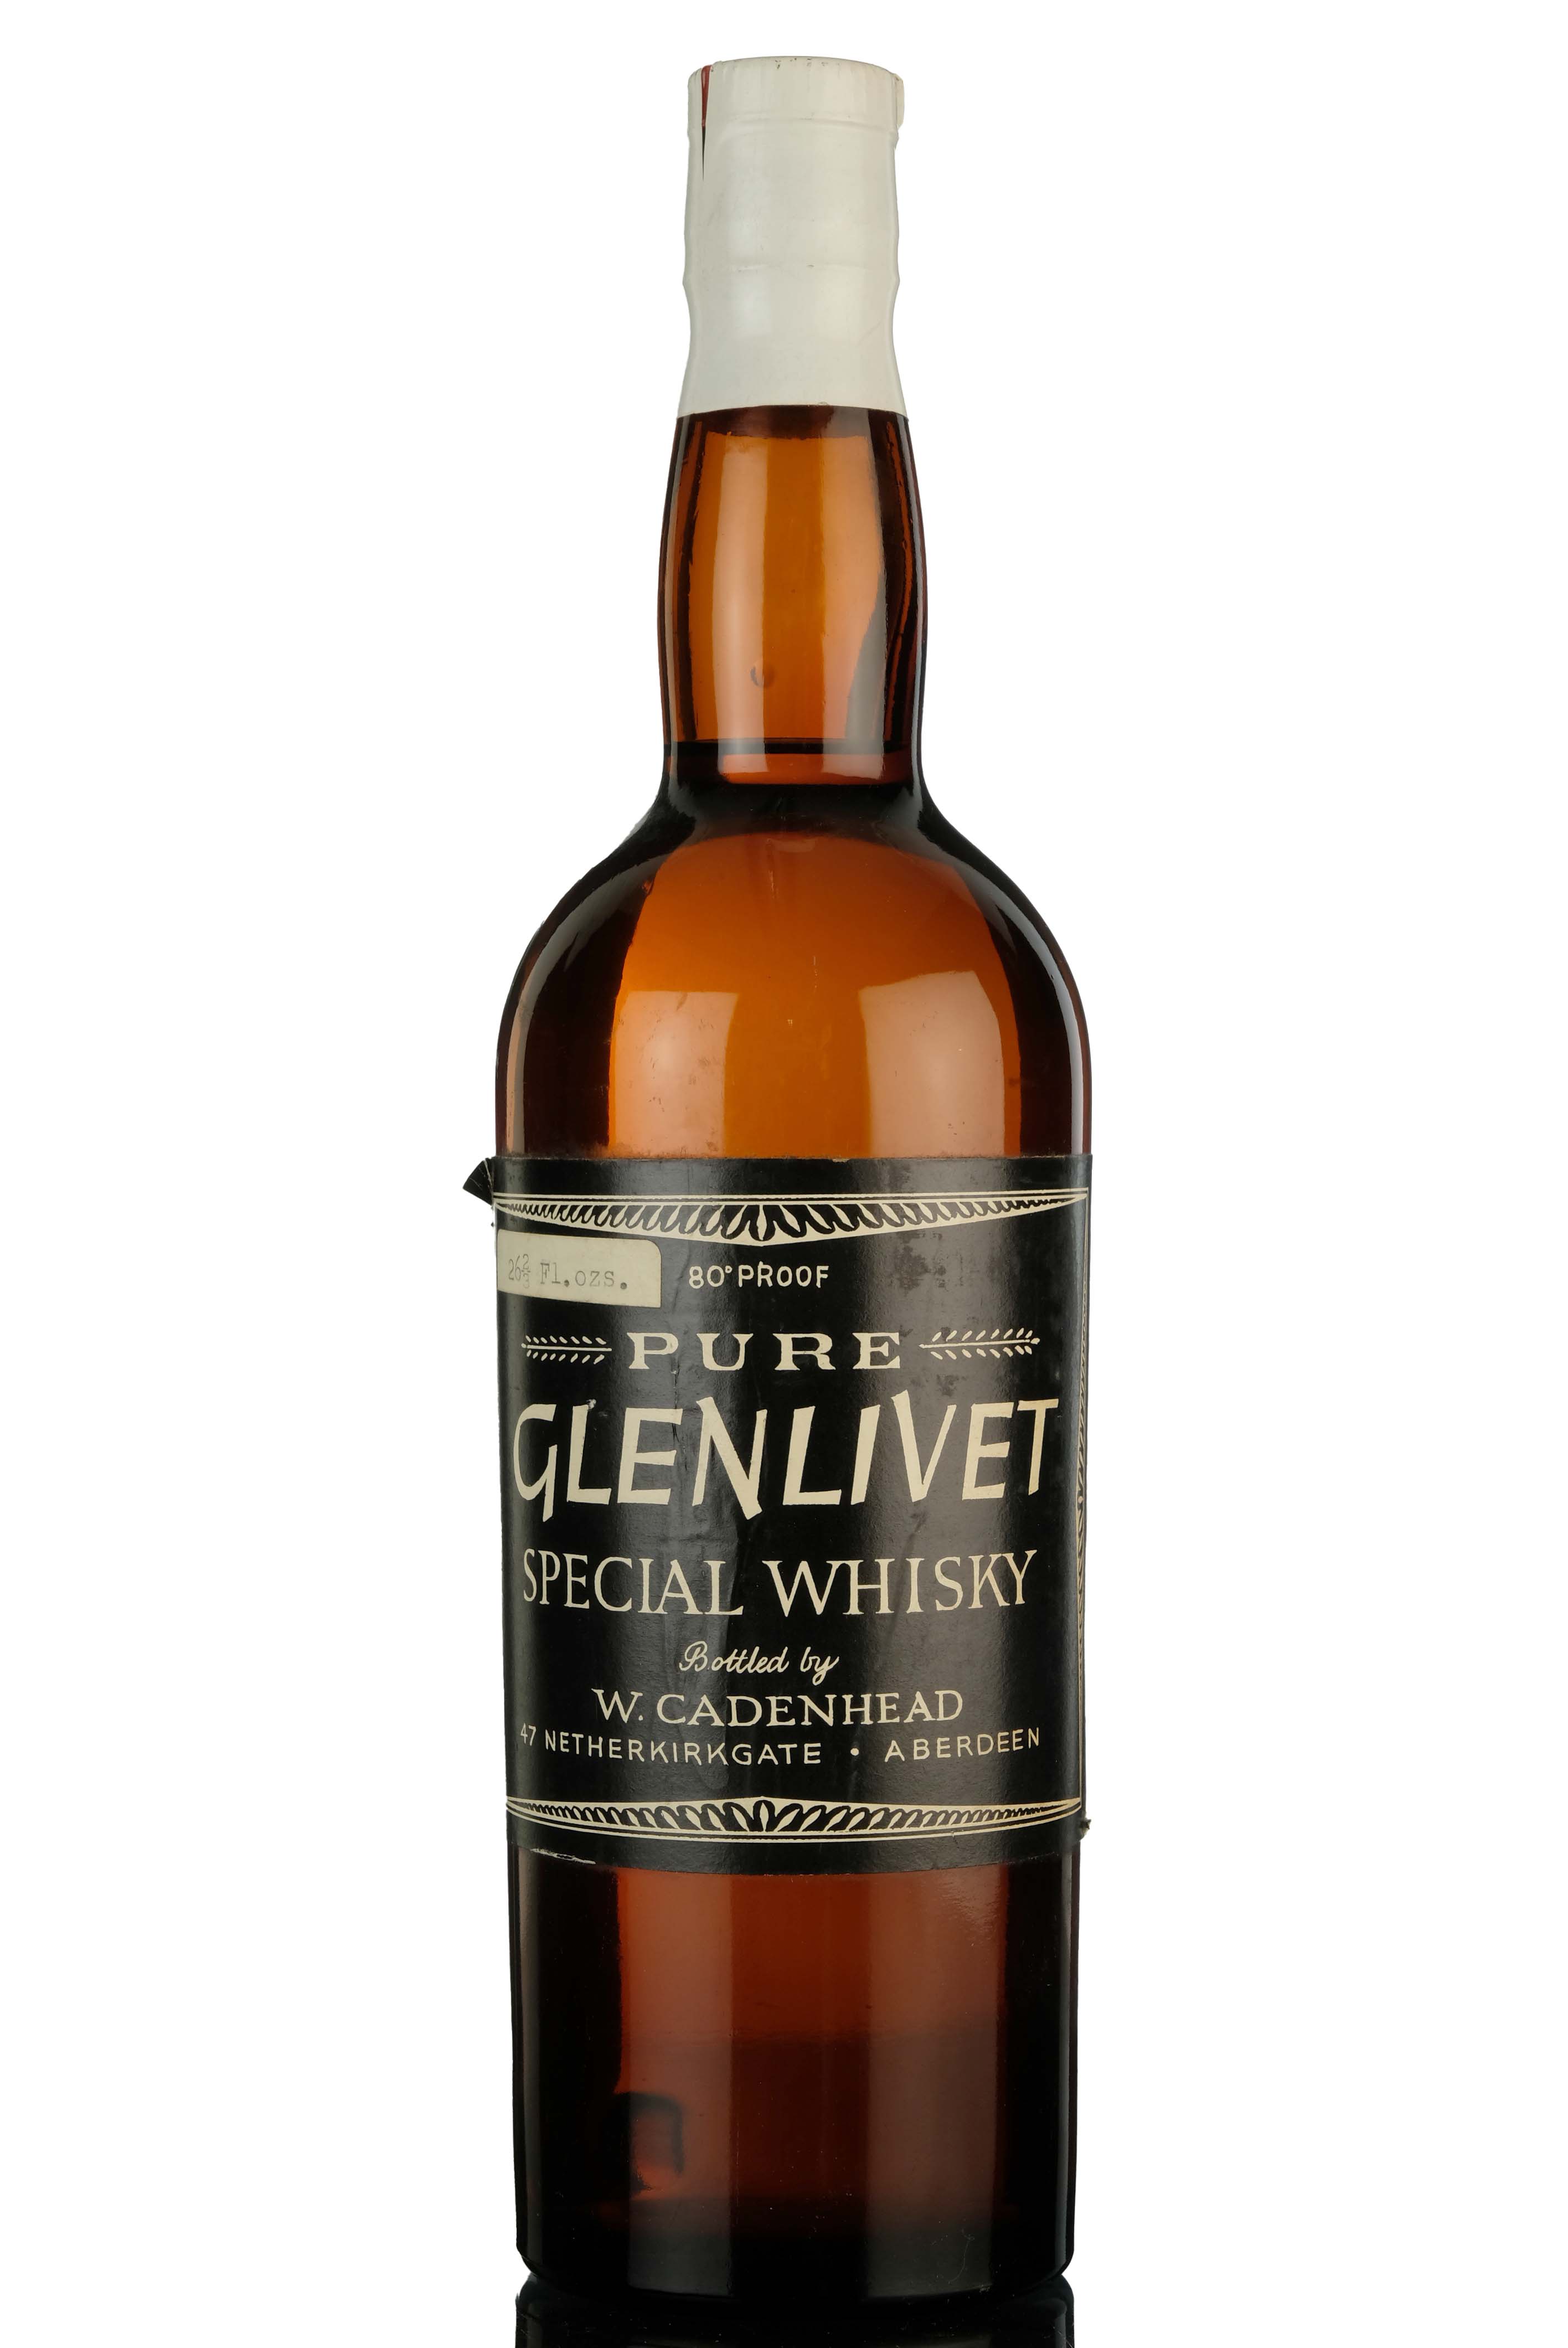 Glenlivet Pure Special Whisky - Cadenheads - 1960s